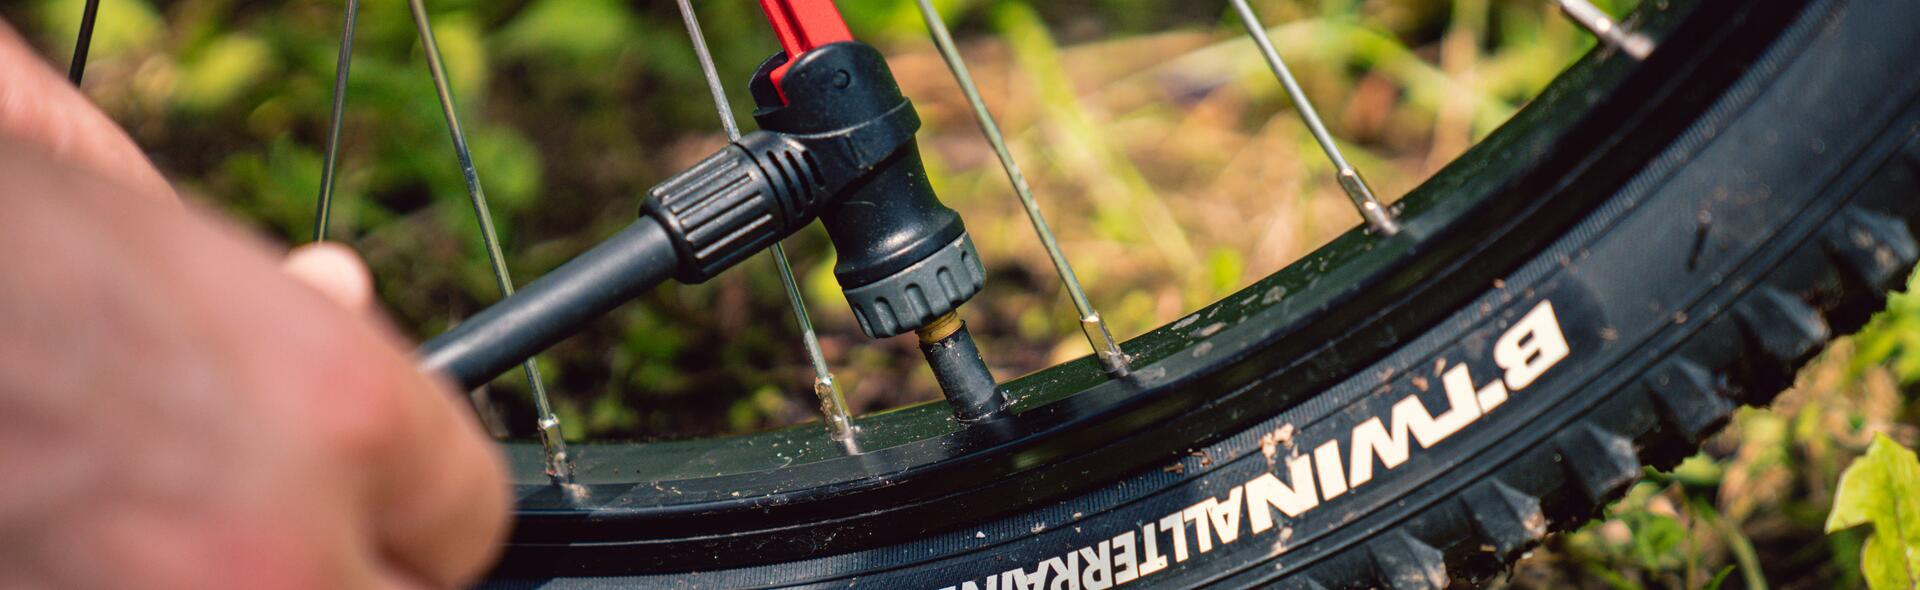 Descubre la presión correcta para las ruedas de la bici